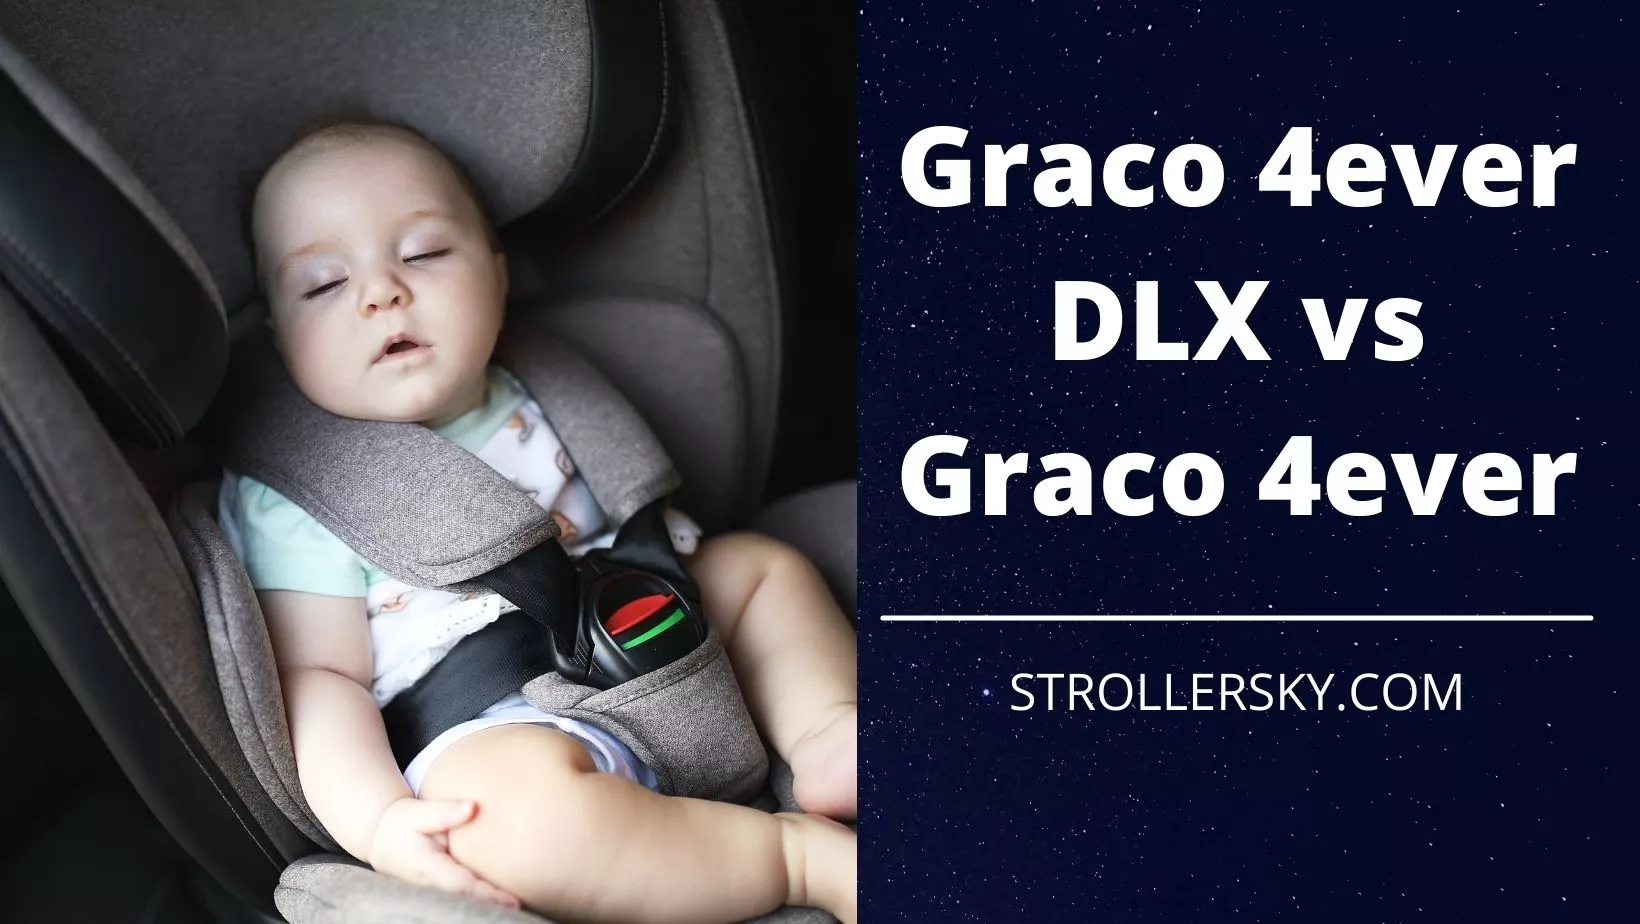 Graco 4ever DLX vs Graco 4ever